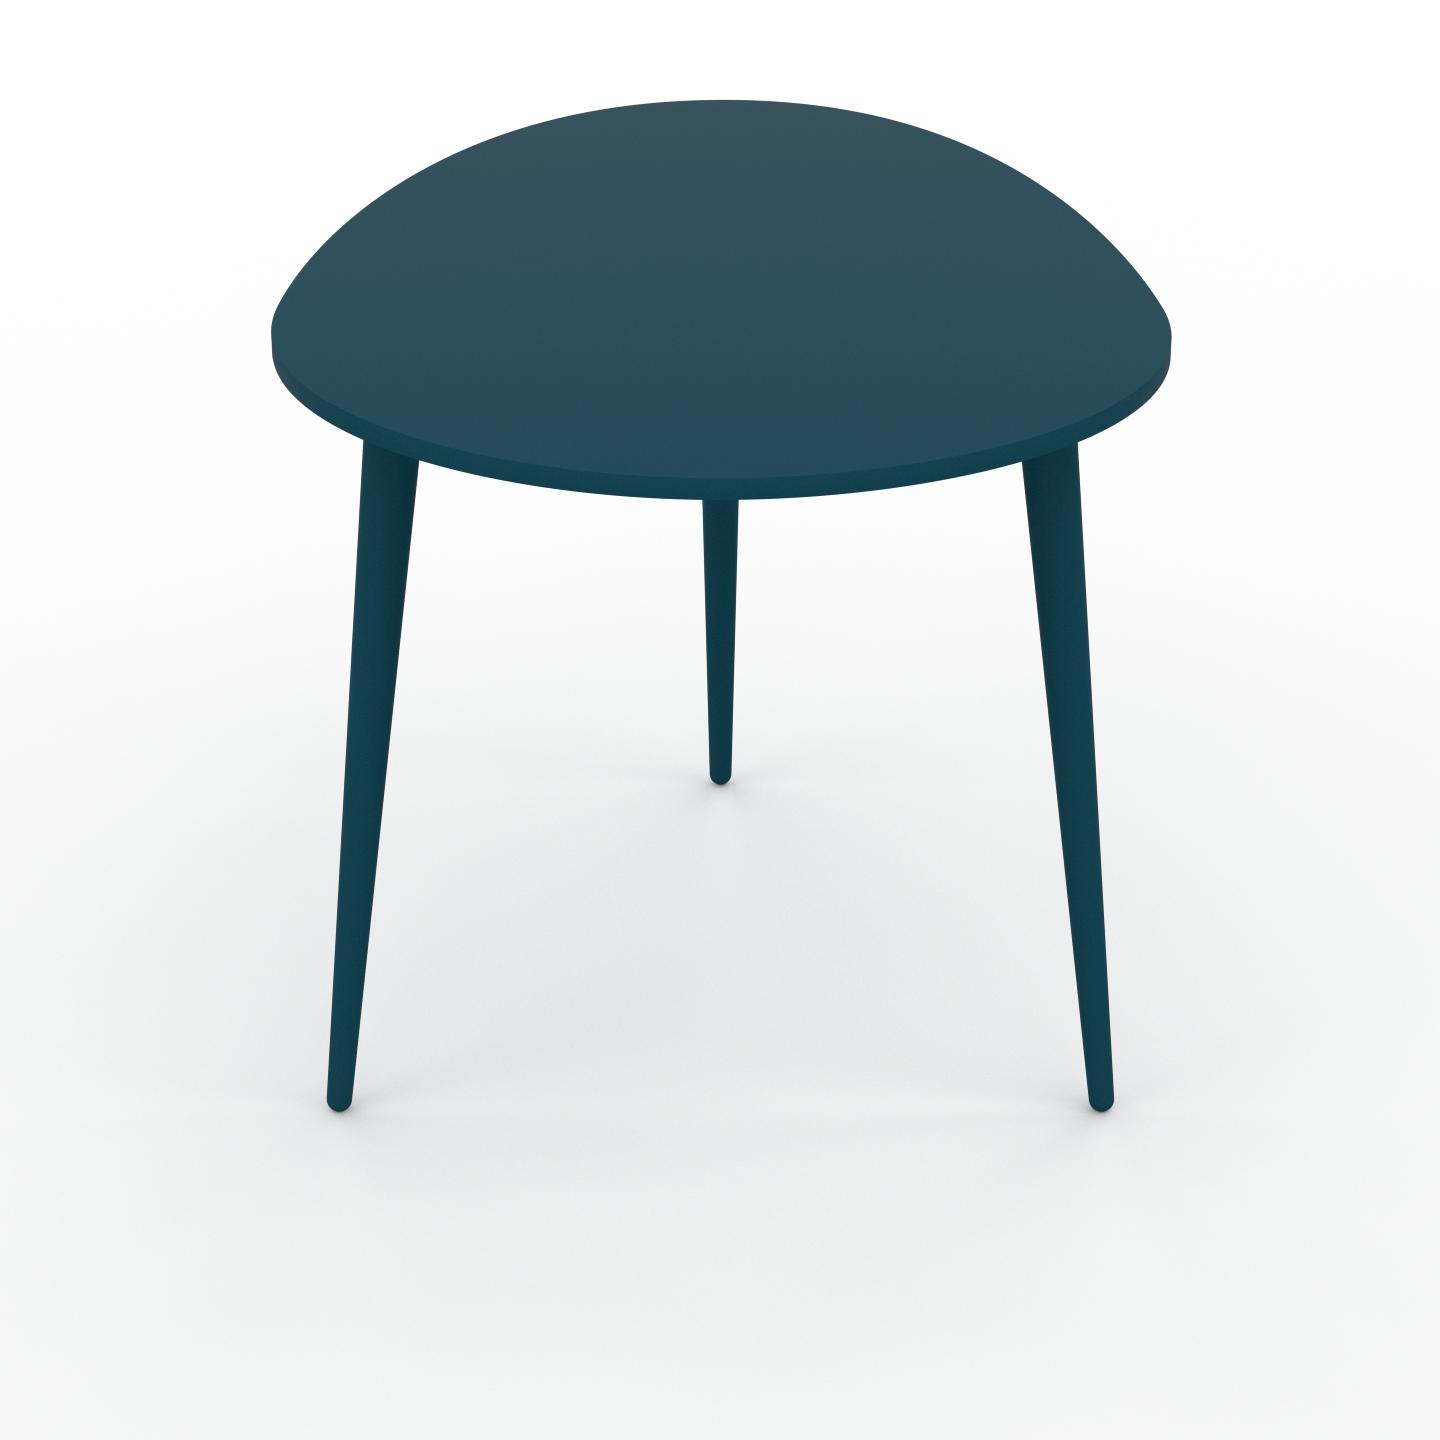 MYCS Couchtisch Blaugrün - Eleganter Sofatisch: Beste Qualität, einzigartiges Design - 67 x 50 x 50 cm, Konfigurator